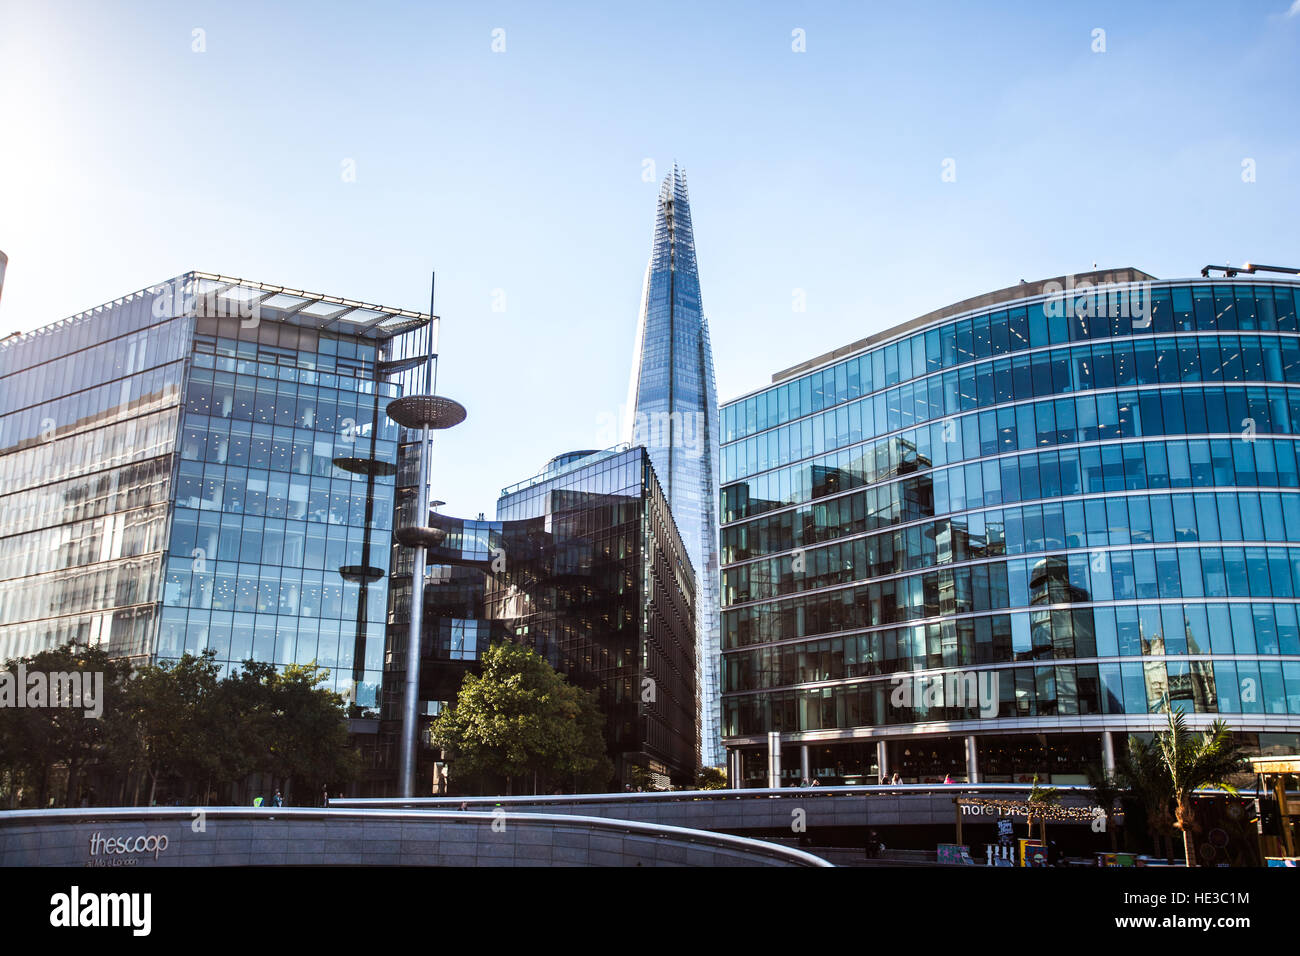 Londres, le Shard et bâtiments de verre bureau estates Banque D'Images